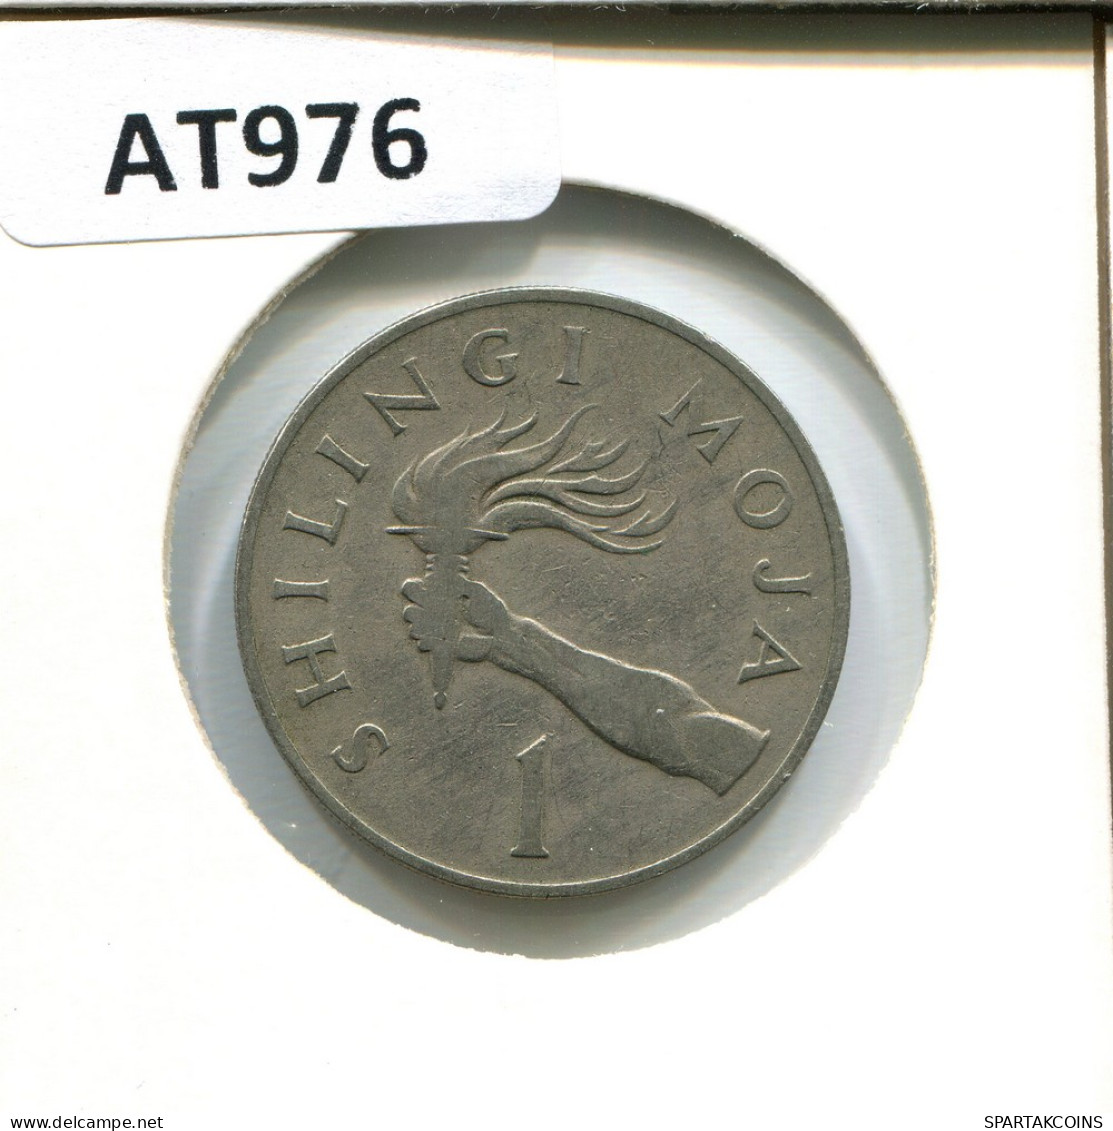 1 SHILLINGI 1972 TANZANIA Moneda #AT976.E - Tanzania